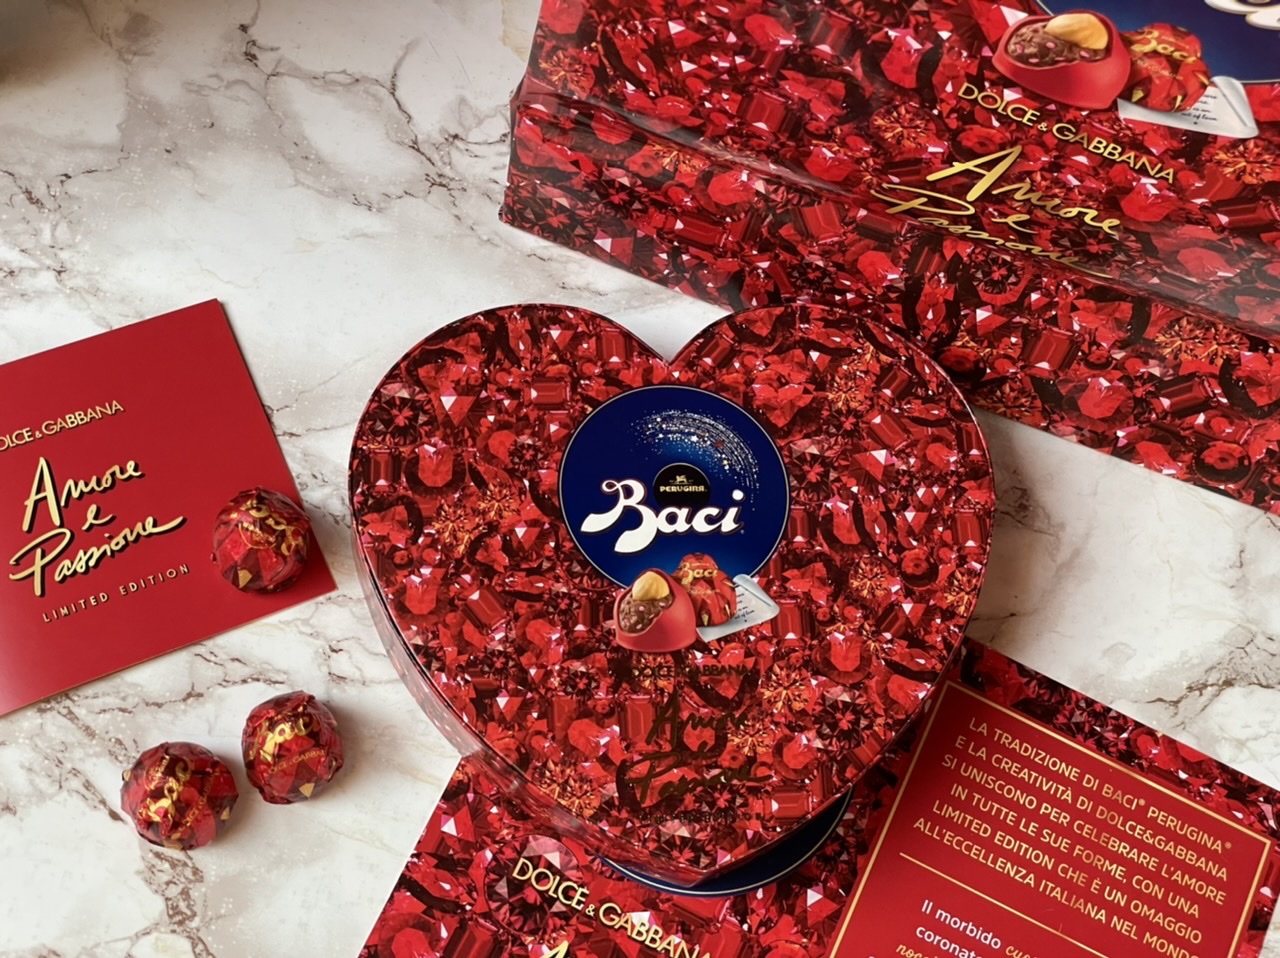 Perché si regalano i cioccolatini a San Valentino? La risposta